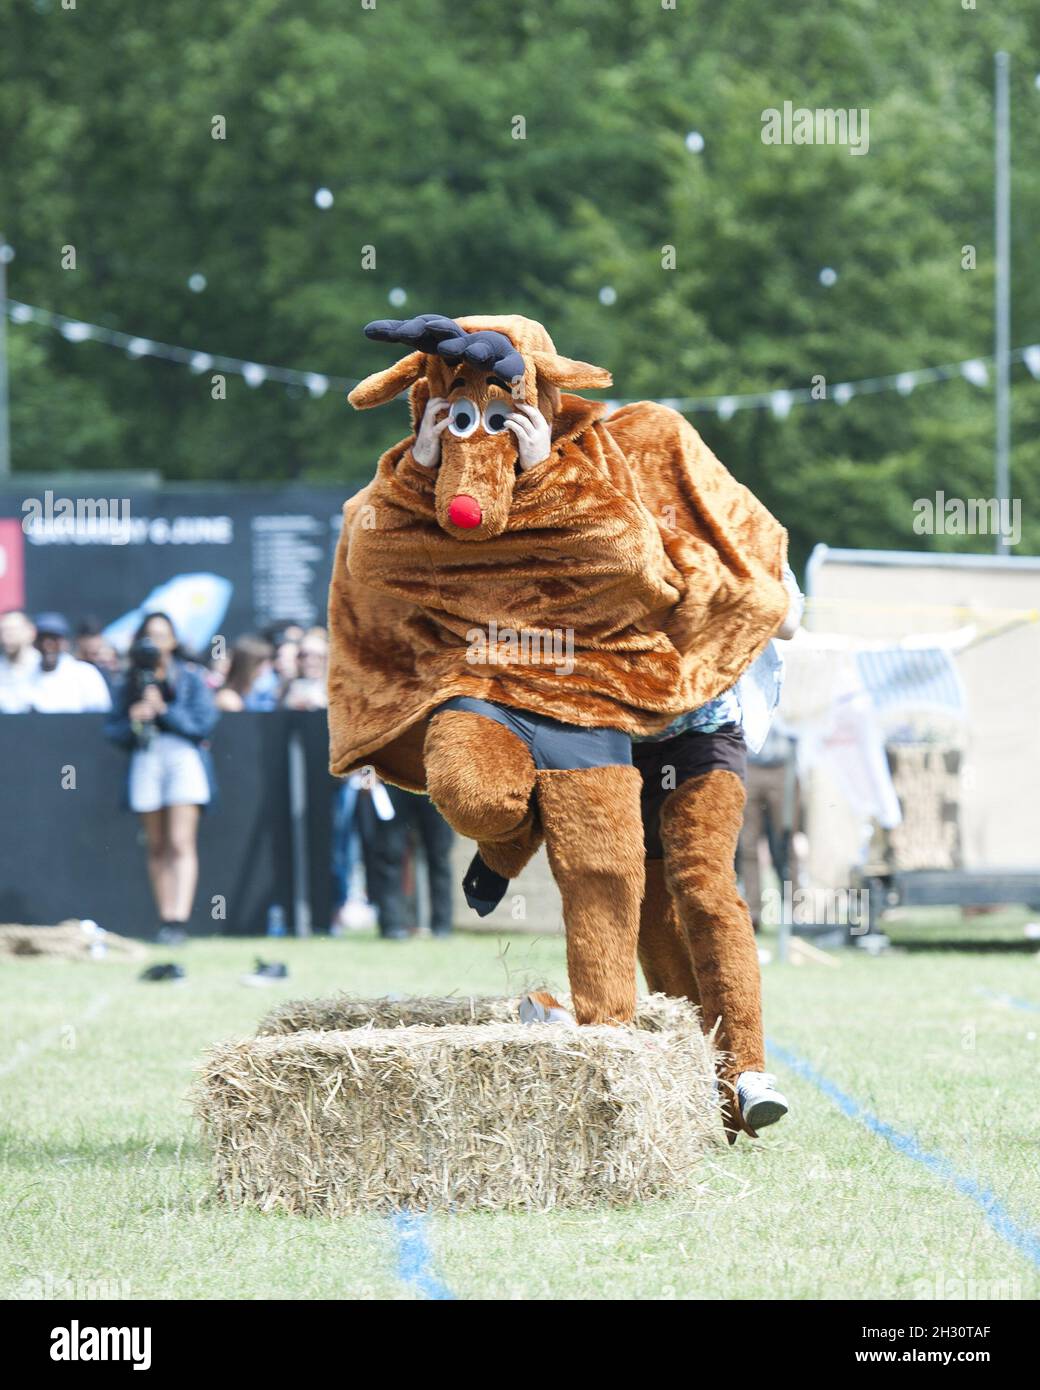 Les festivaliers participent à la course hippique pantomime le 1er jour de Field Day, Victoria Park - Londres Banque D'Images